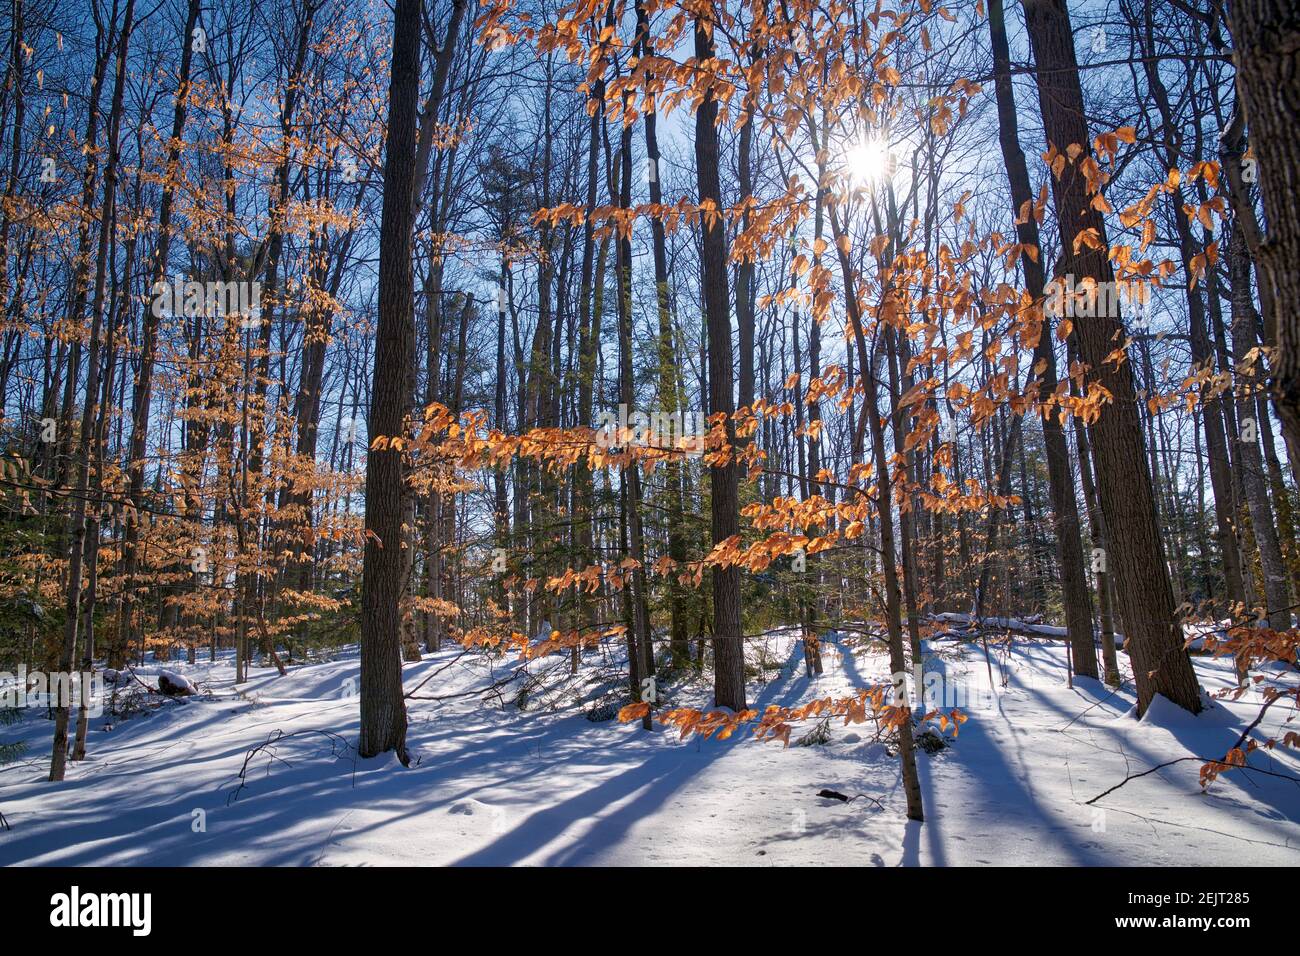 Couleur vive des feuilles de chêne après une chute de neige au début de l'hiver dans la forêt. Banque D'Images